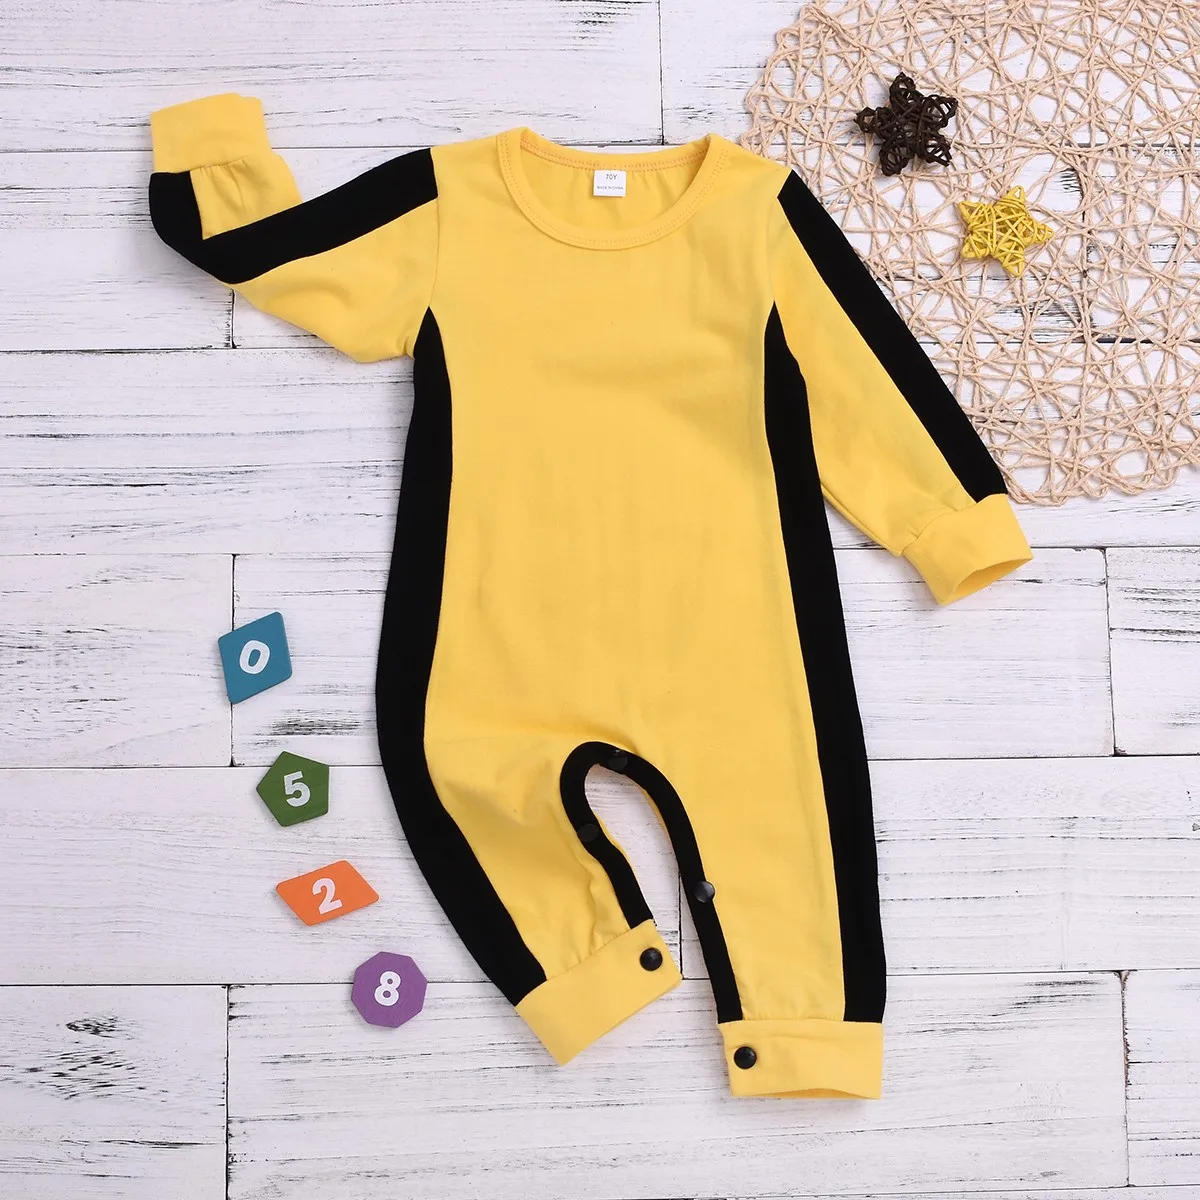 TELOTUNY-Ная новинка и высокое качество футболка камуфляжной расцветки для новорожденных для мальчиков и девочек, Классические комбинезоны детские одежда Z0215